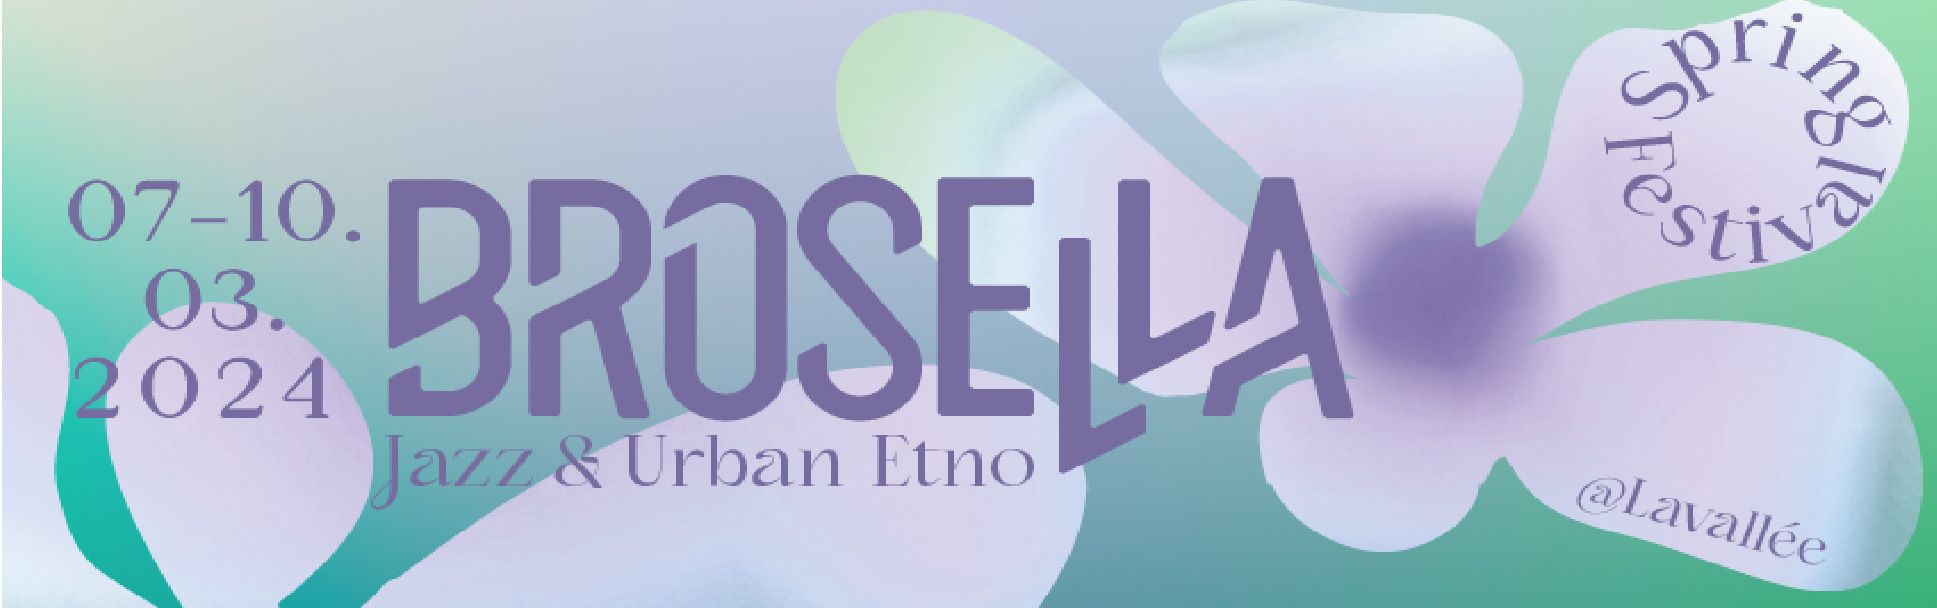 Brosella Festival header